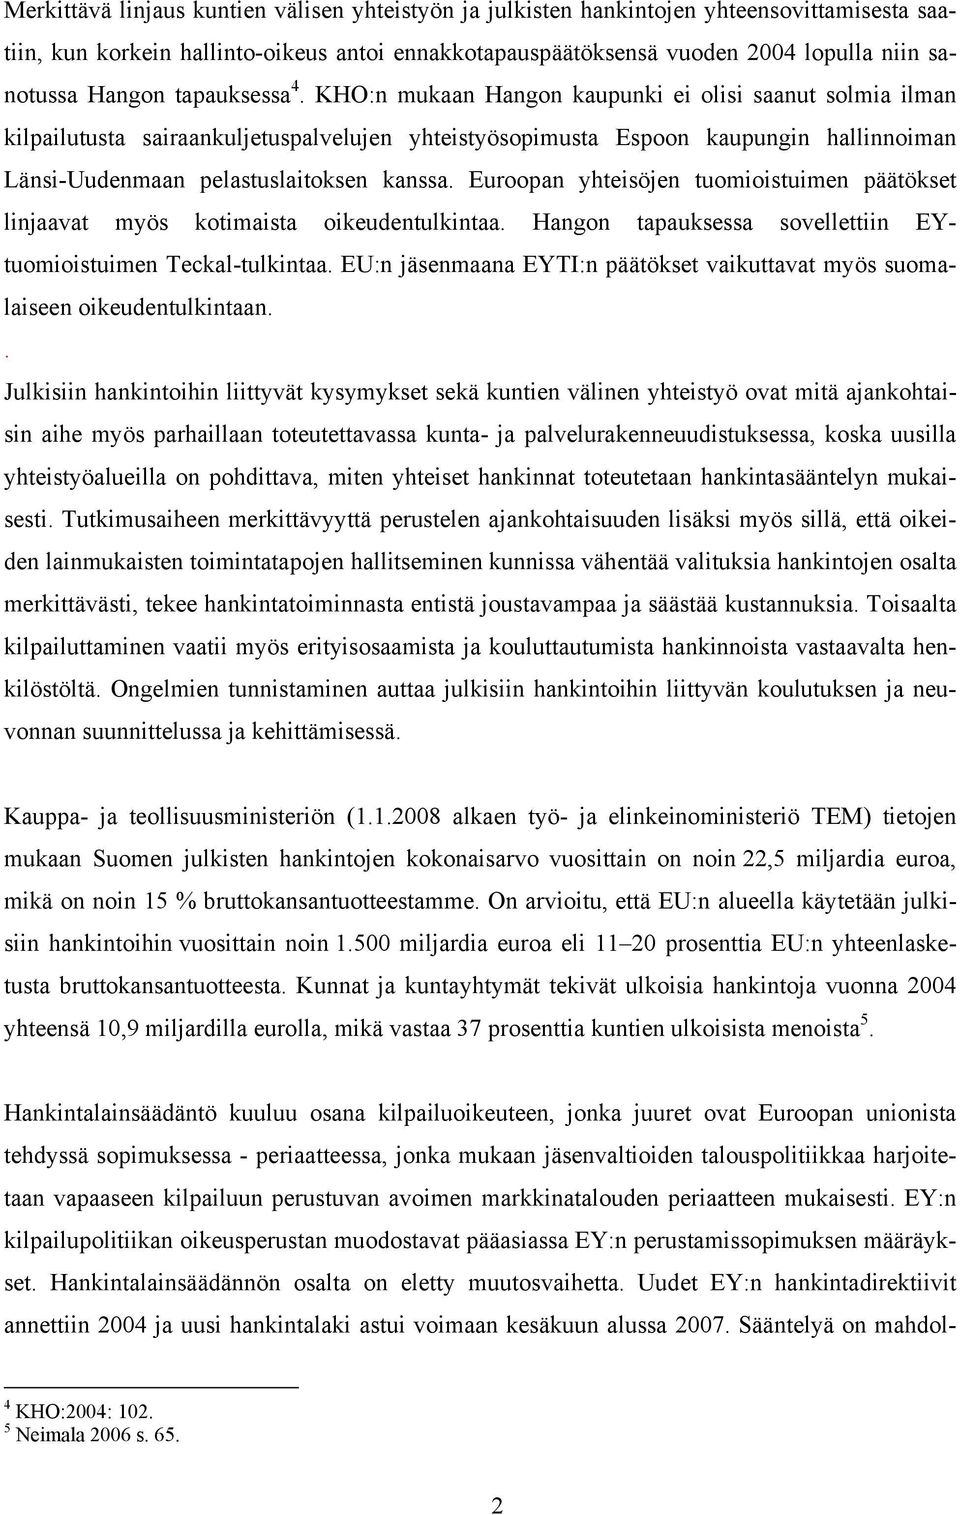 KHO:n mukaan Hangon kaupunki ei olisi saanut solmia ilman kilpailutusta sairaankuljetuspalvelujen yhteistyösopimusta Espoon kaupungin hallinnoiman Länsi-Uudenmaan pelastuslaitoksen kanssa.